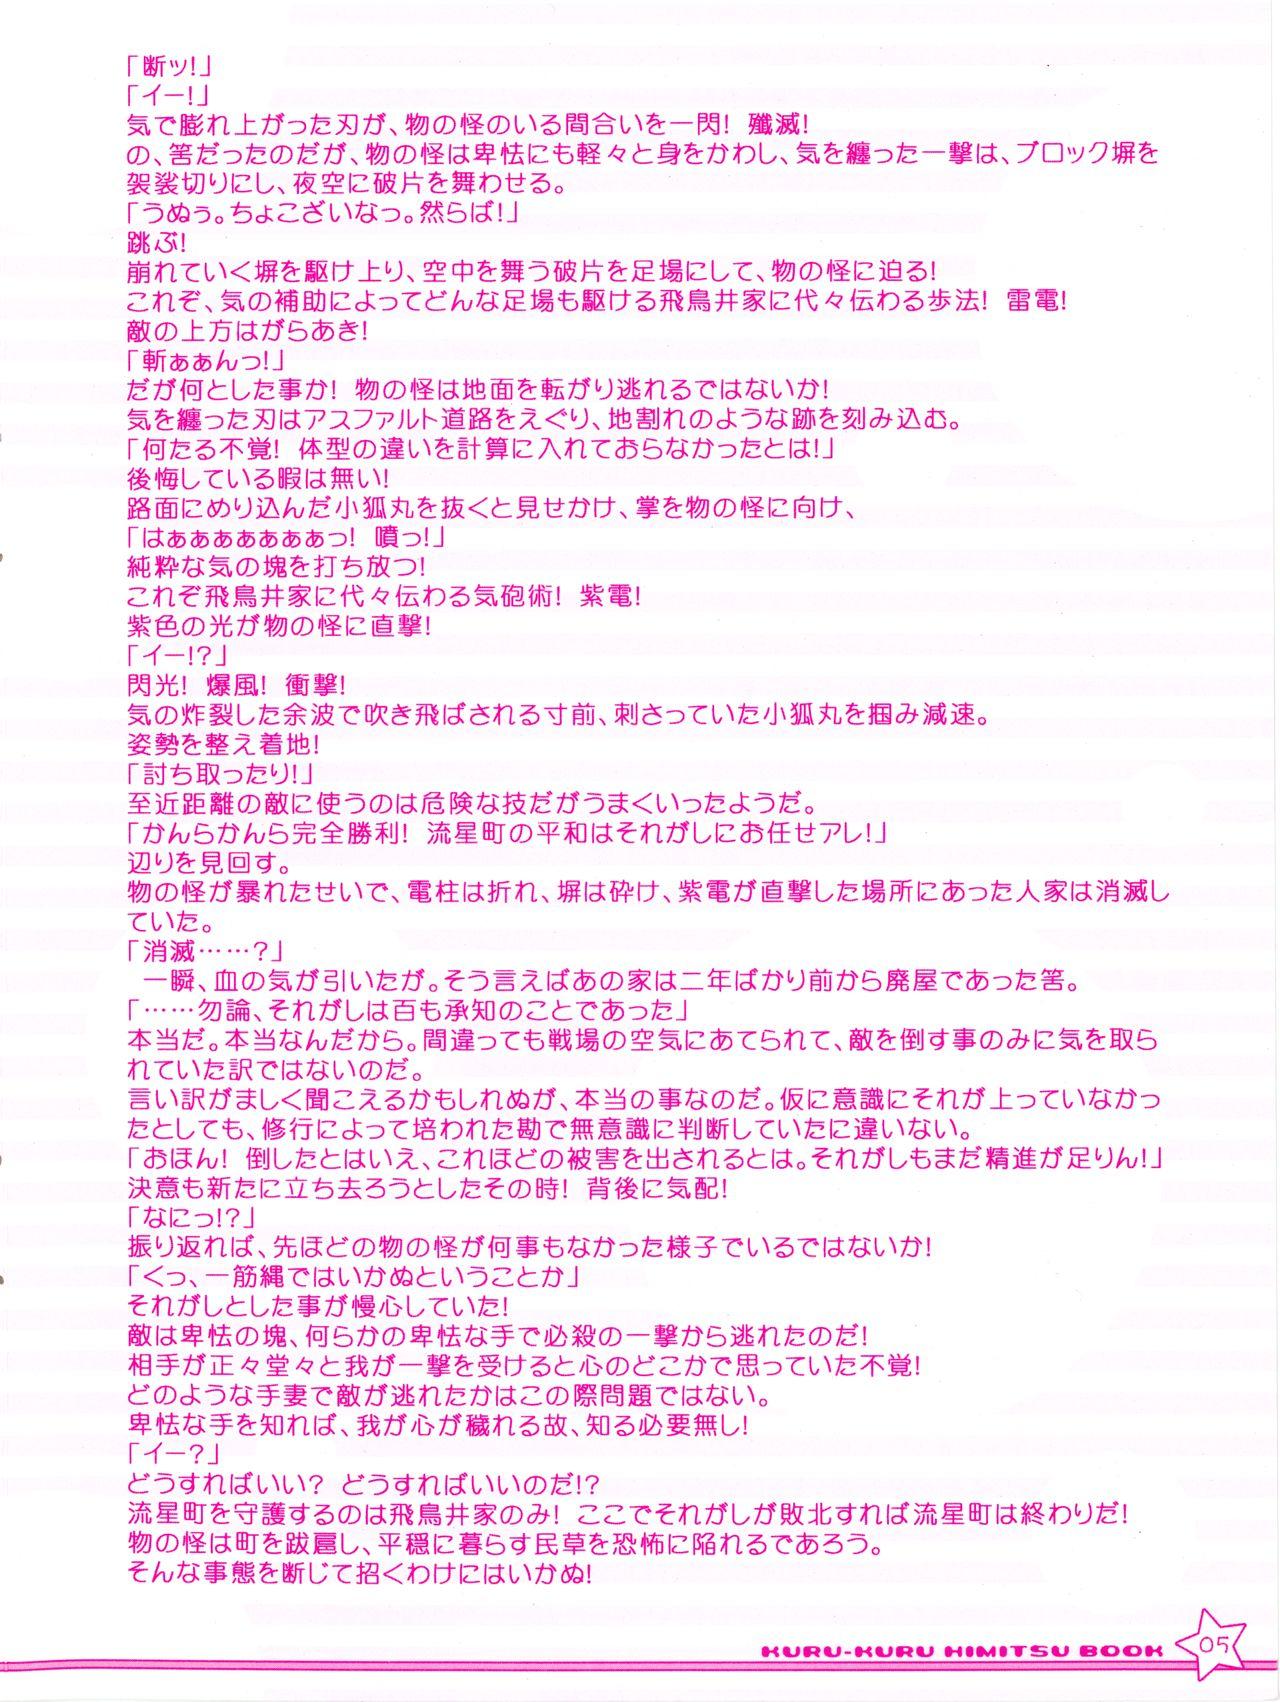 Piercing Twinkle☆Crusaders Kurukuru Most Secret Booklet - Twinkle crusaders Trans - Page 5